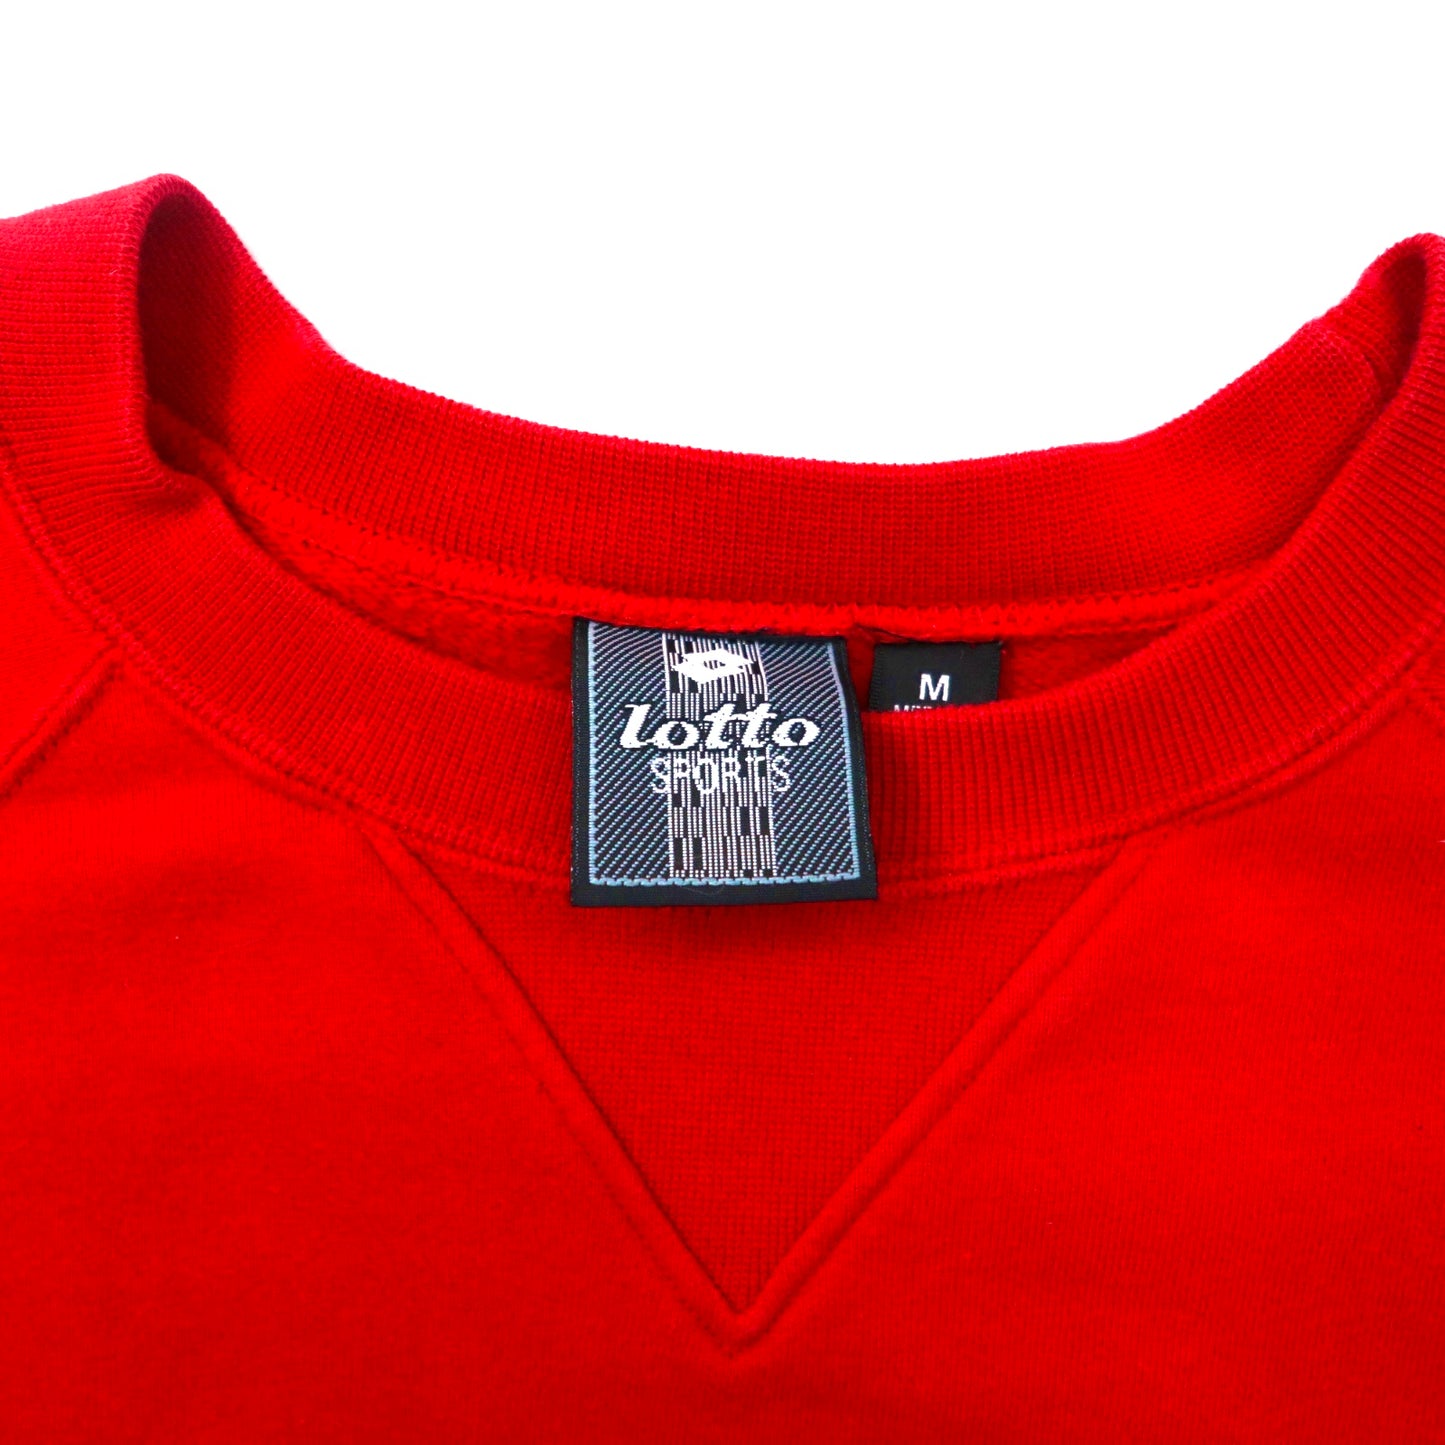 Lotto SPORTS クルーネックスウェット M レッド コットン 裏起毛 ロゴ刺繍 袖ロゴ 90年代